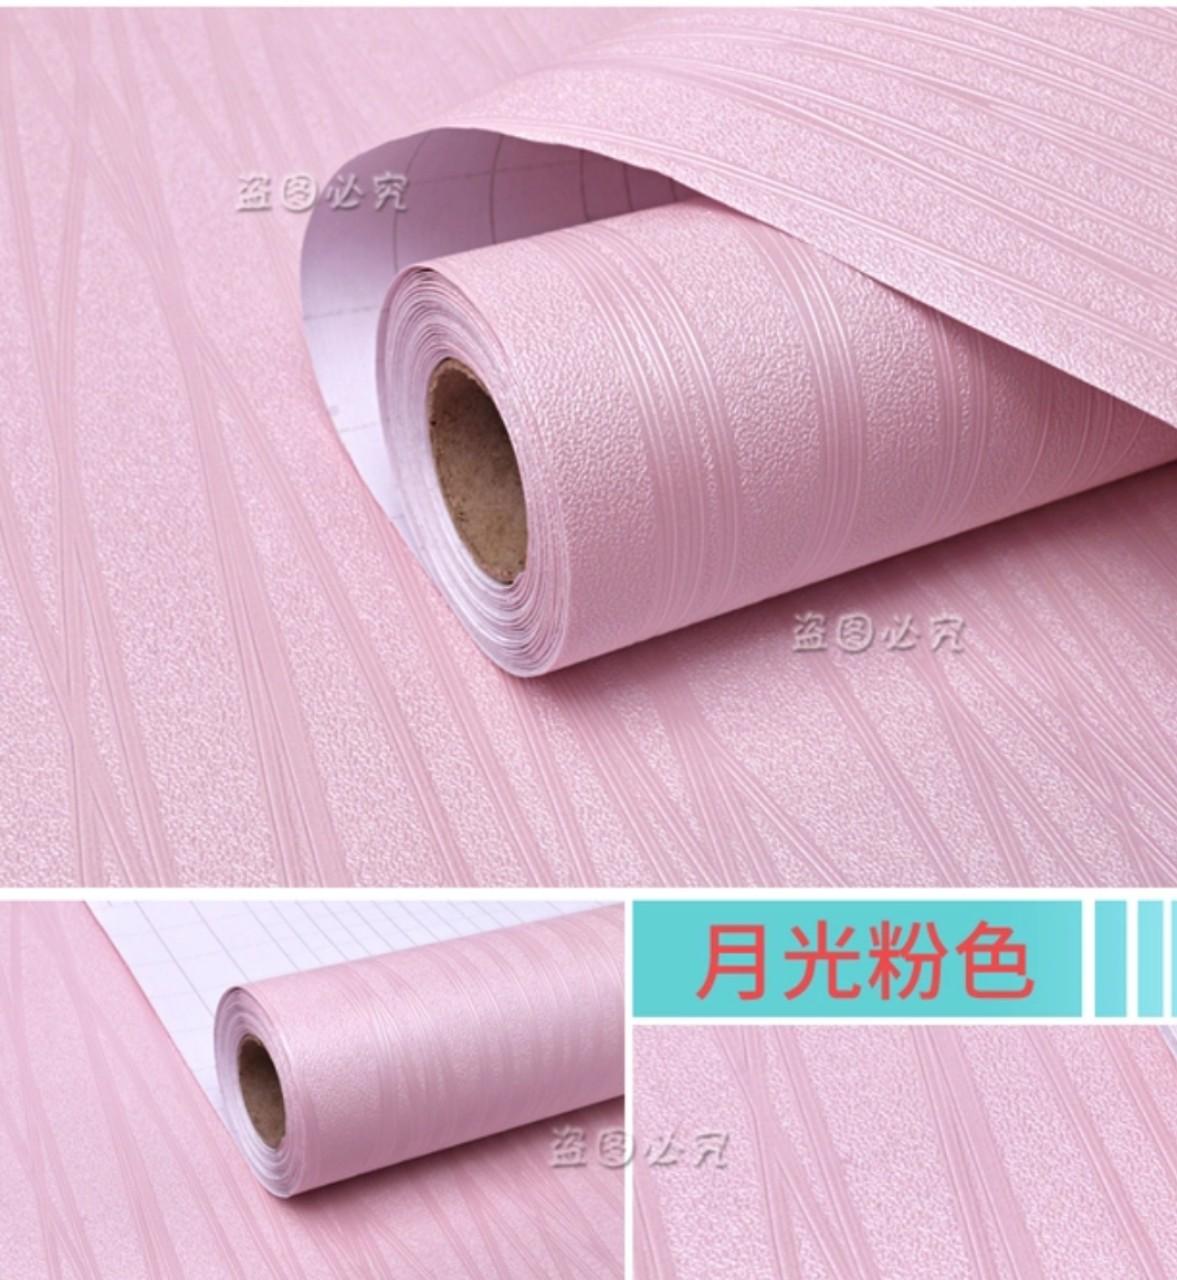 Cuộn 10m decal giấy dán tường sợi chỉ các màu khổ 45cm keo sẵn dán 4.5 mét vuông